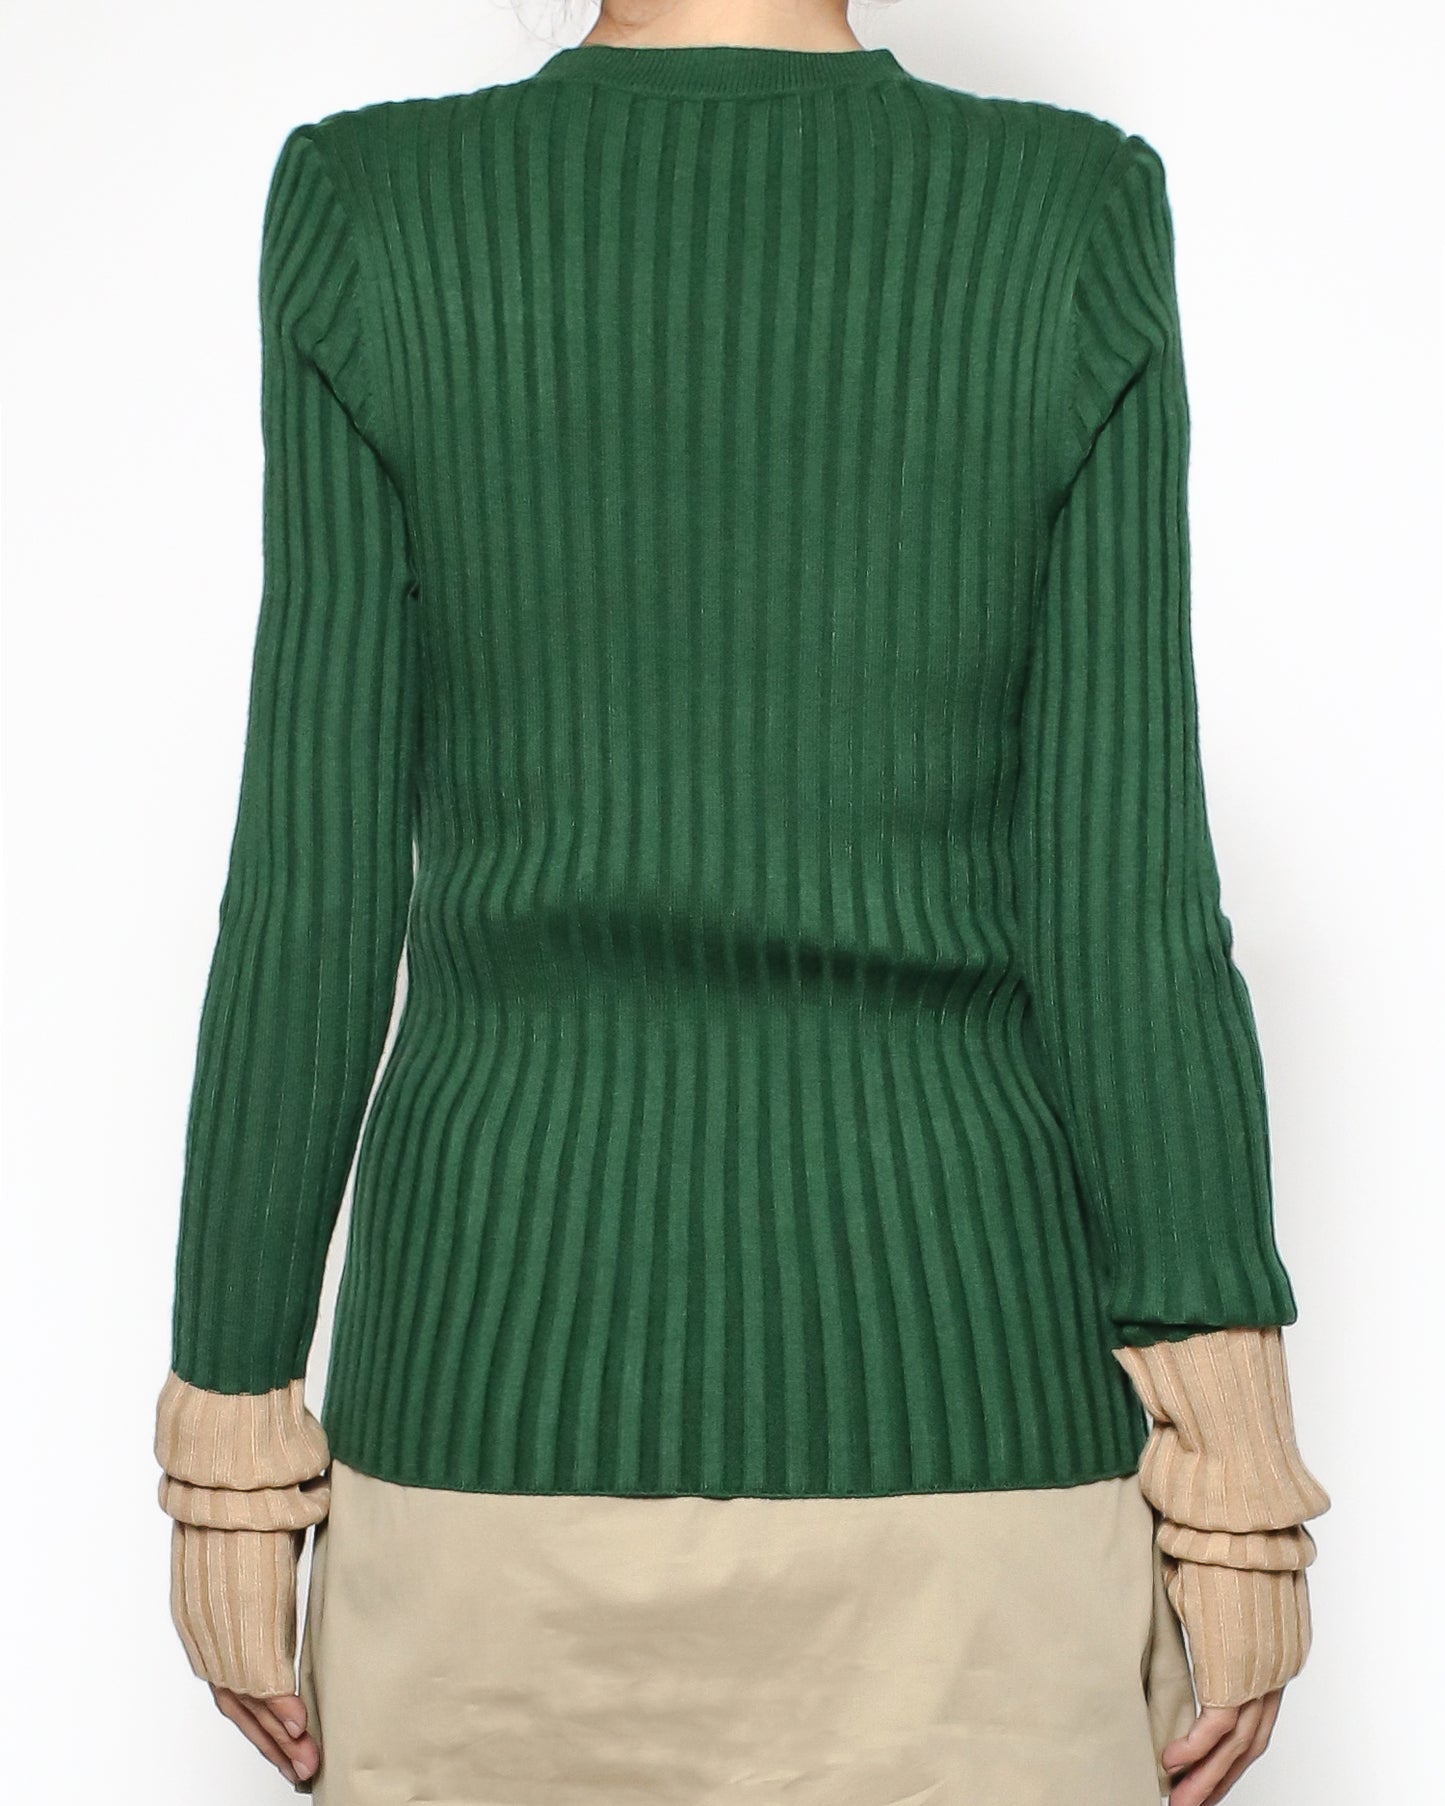 green & beige sleeves knitted top *pre-order*